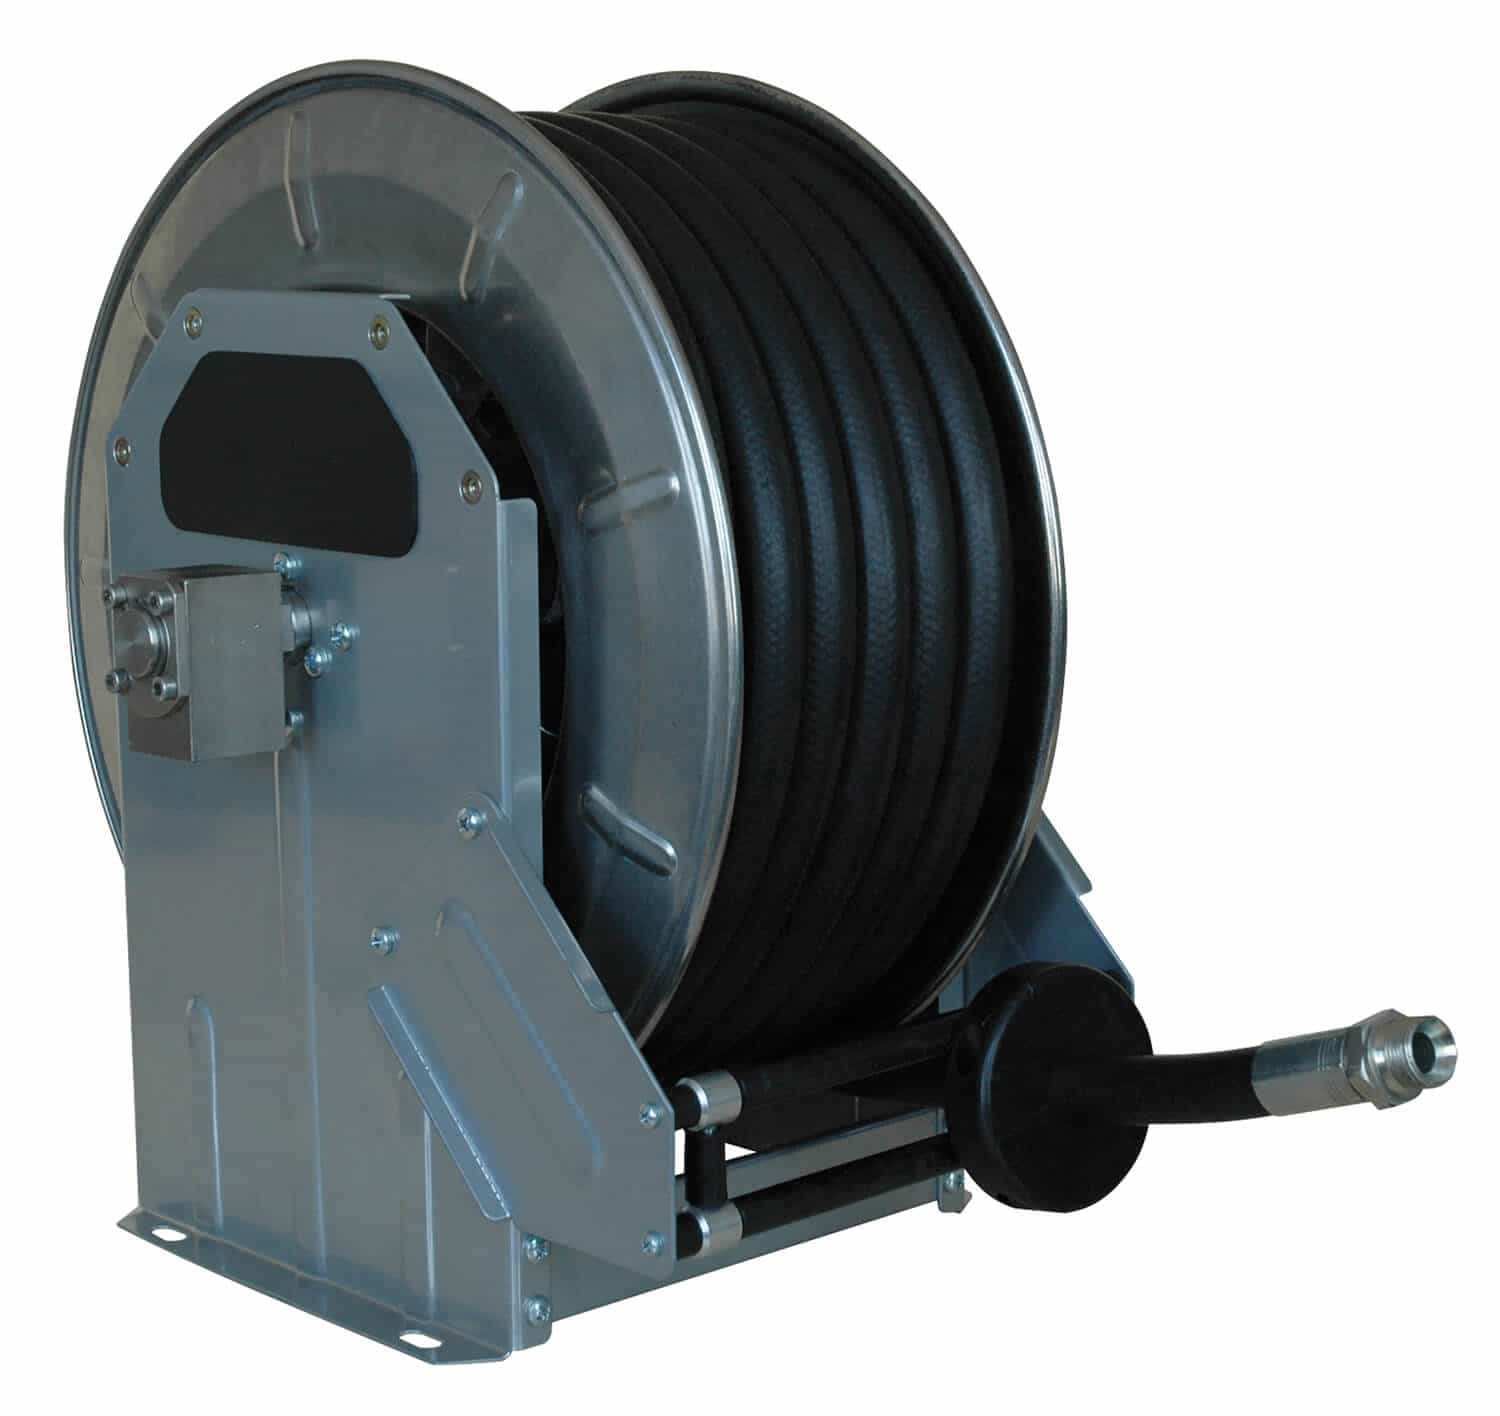 Automatischer Schlauchaufroller für Hochdruck komplett in Edelstahl für bis zu 40 m Schlauch DN 12, zur Wand-, Boden- oder Deckenmontage.